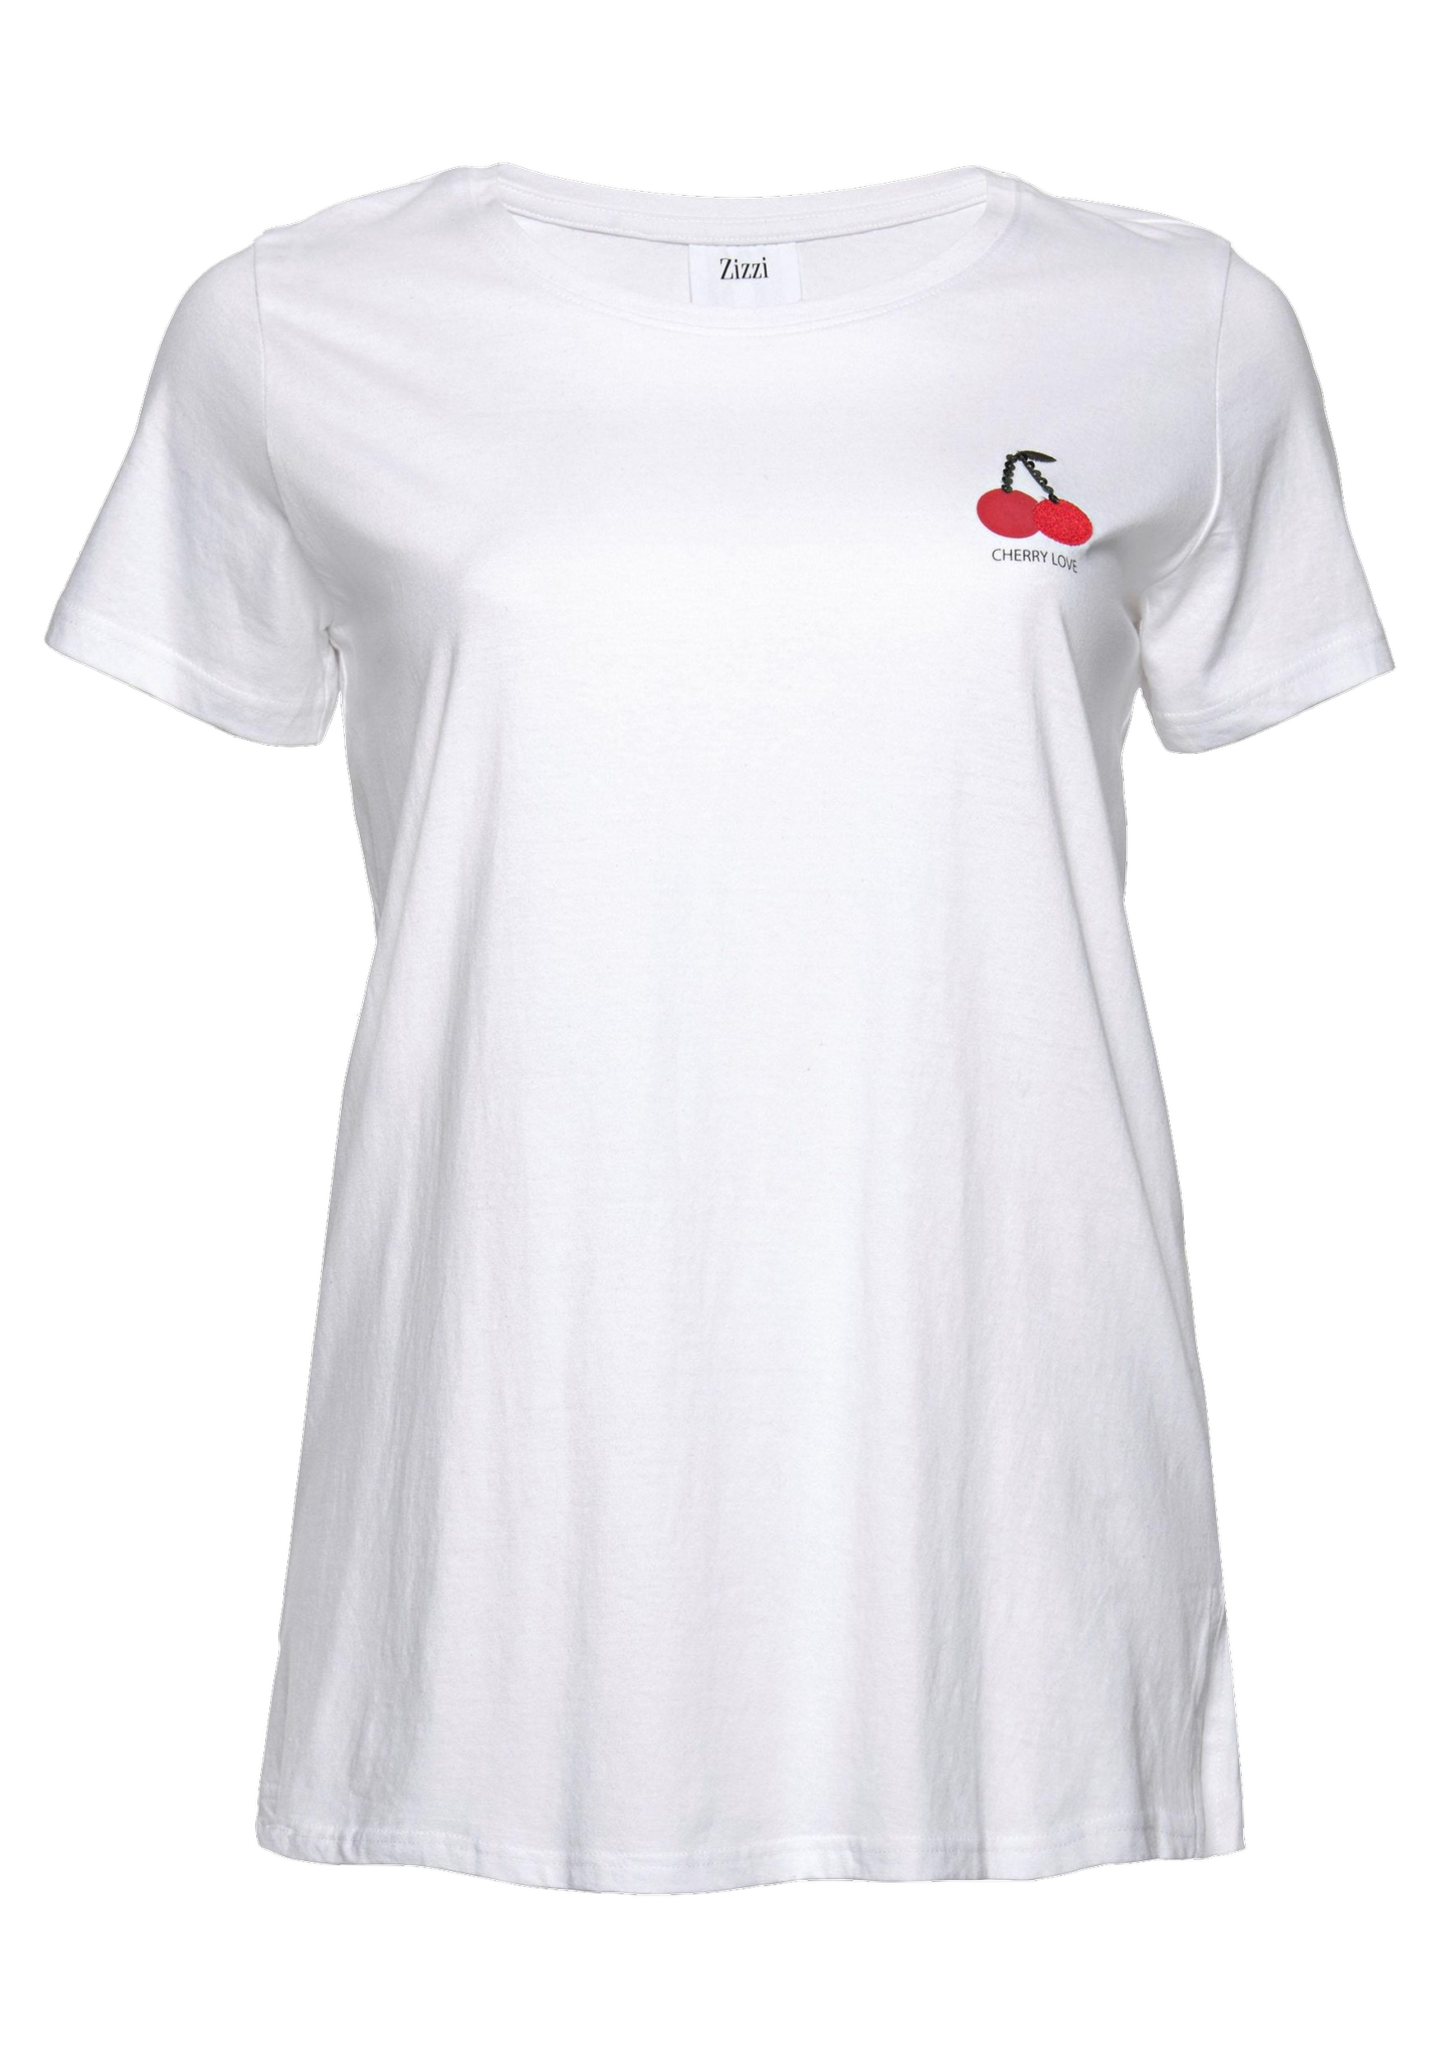 Plus-Size T-Shirt von Zizzi mit Cherry-Print